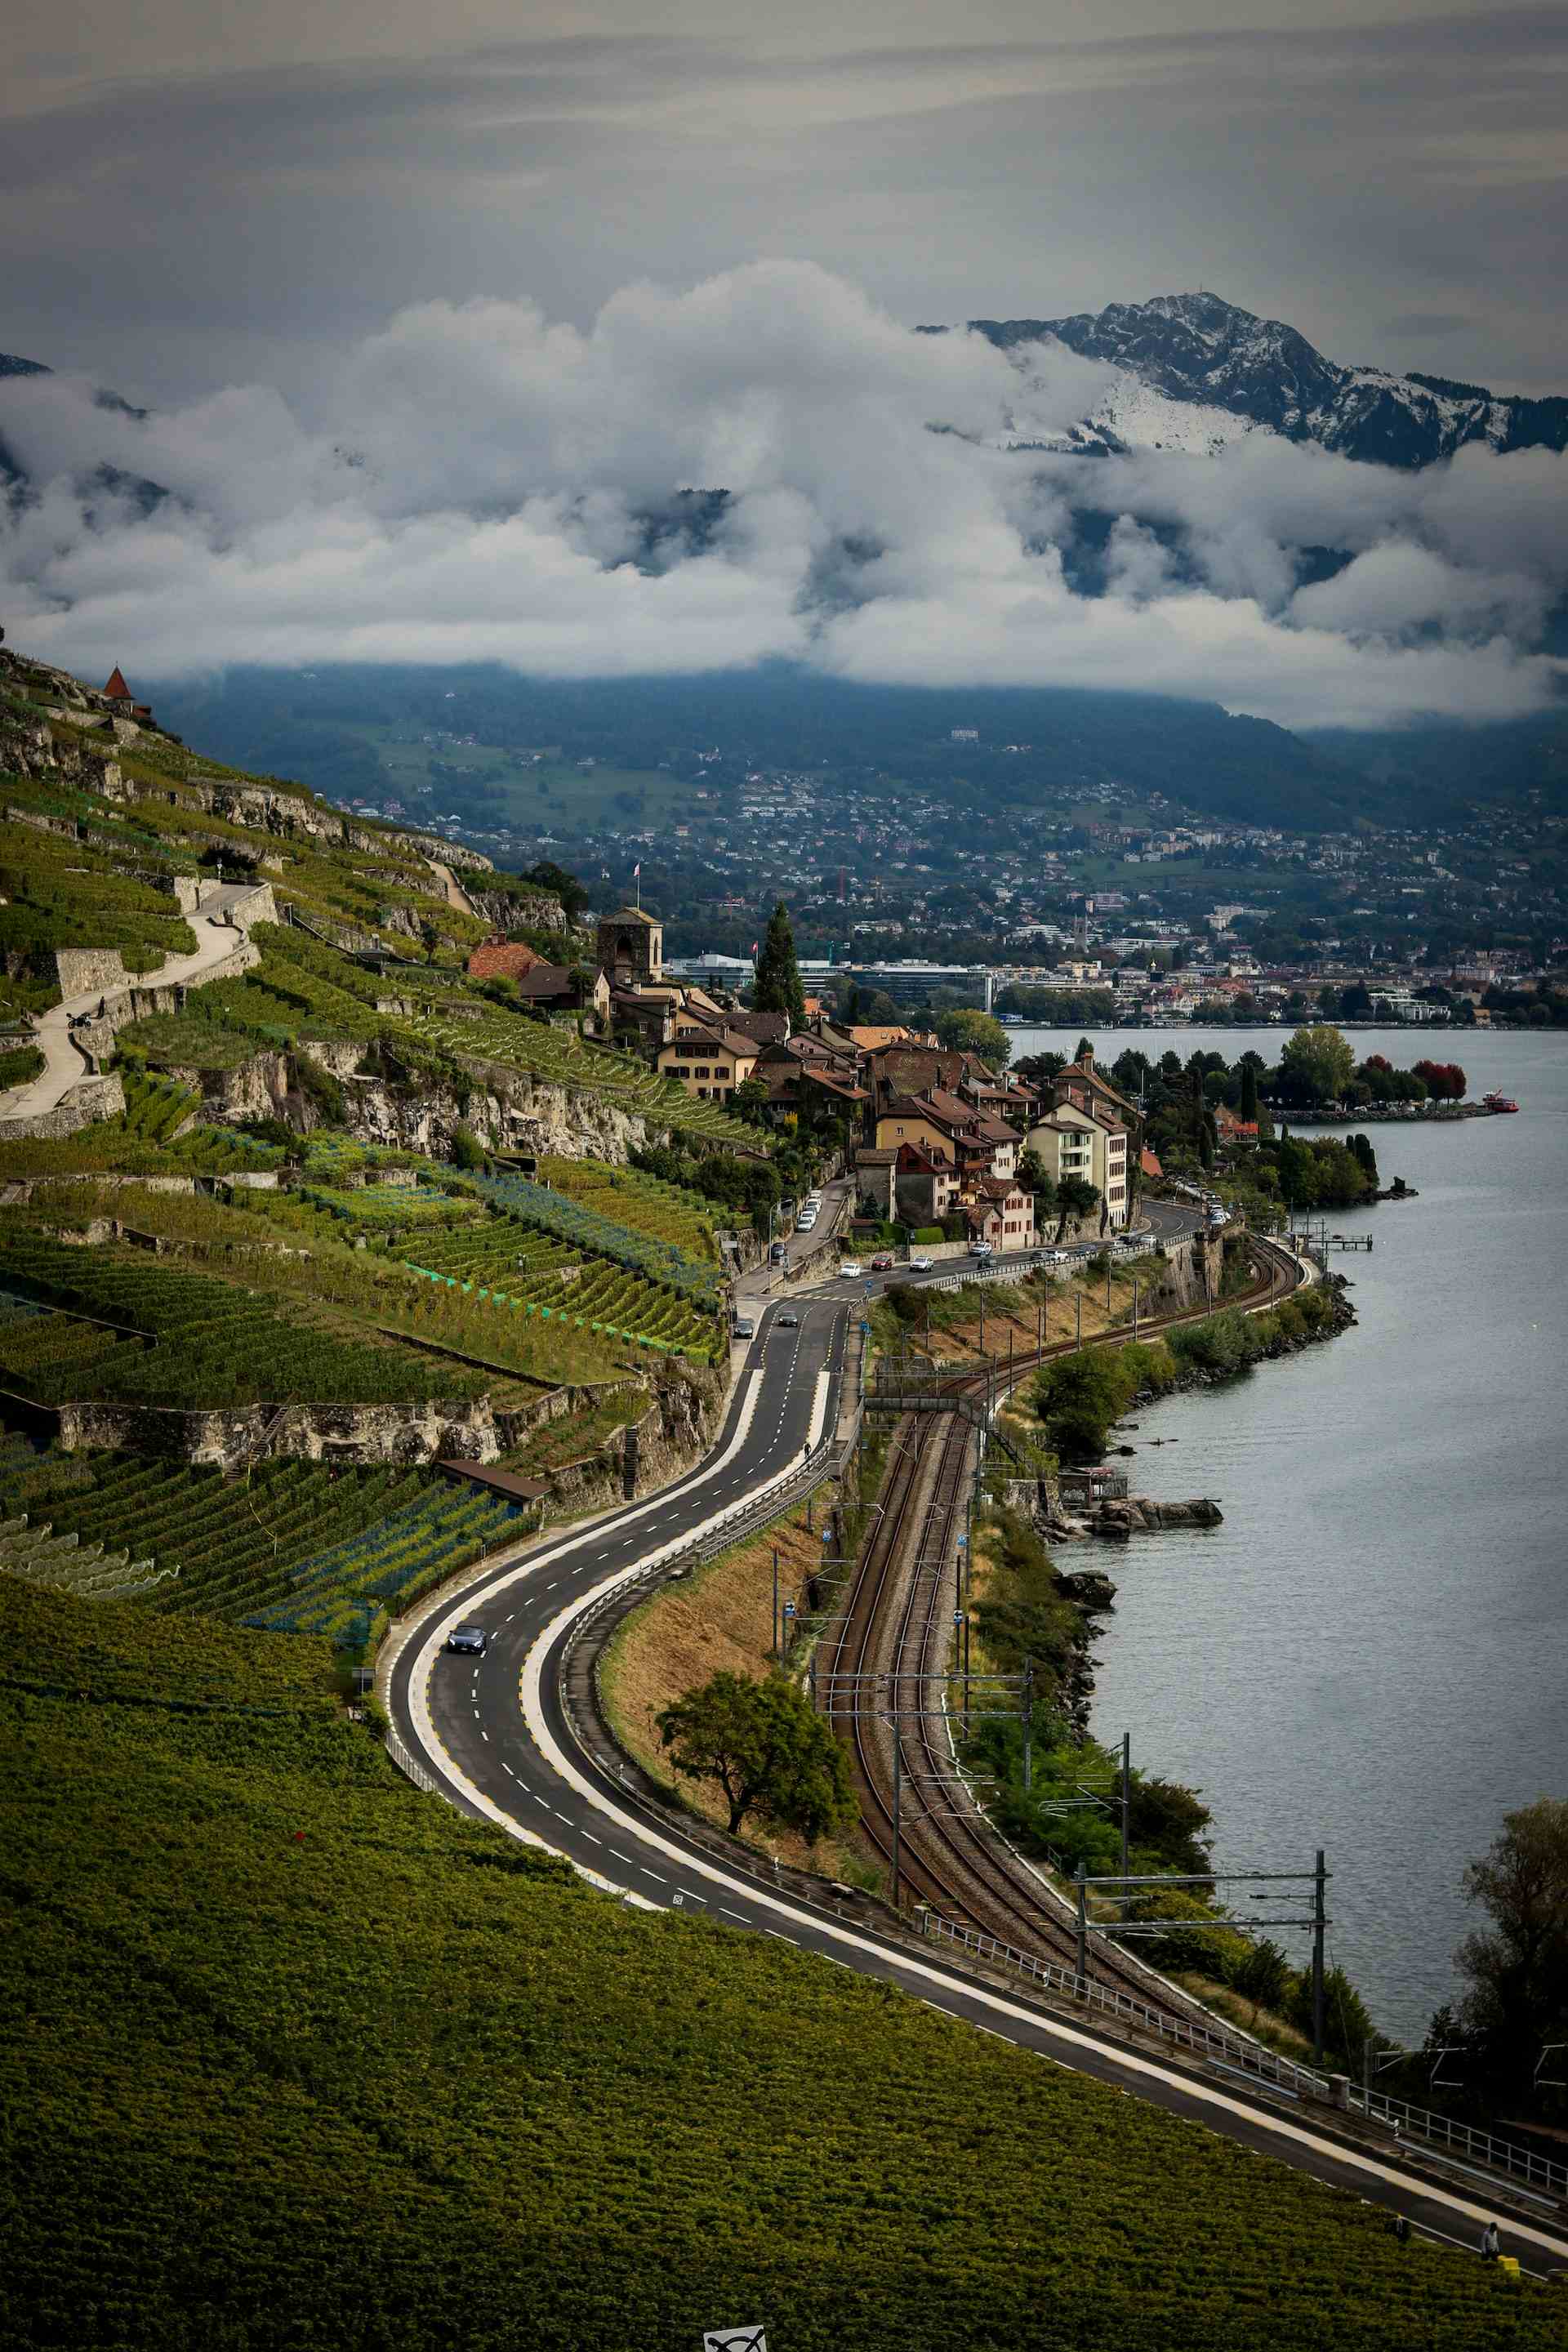 Miellerie de l'Alliaz, produttore nel Montreux canton Vaud in Svizzera, | Mimelis